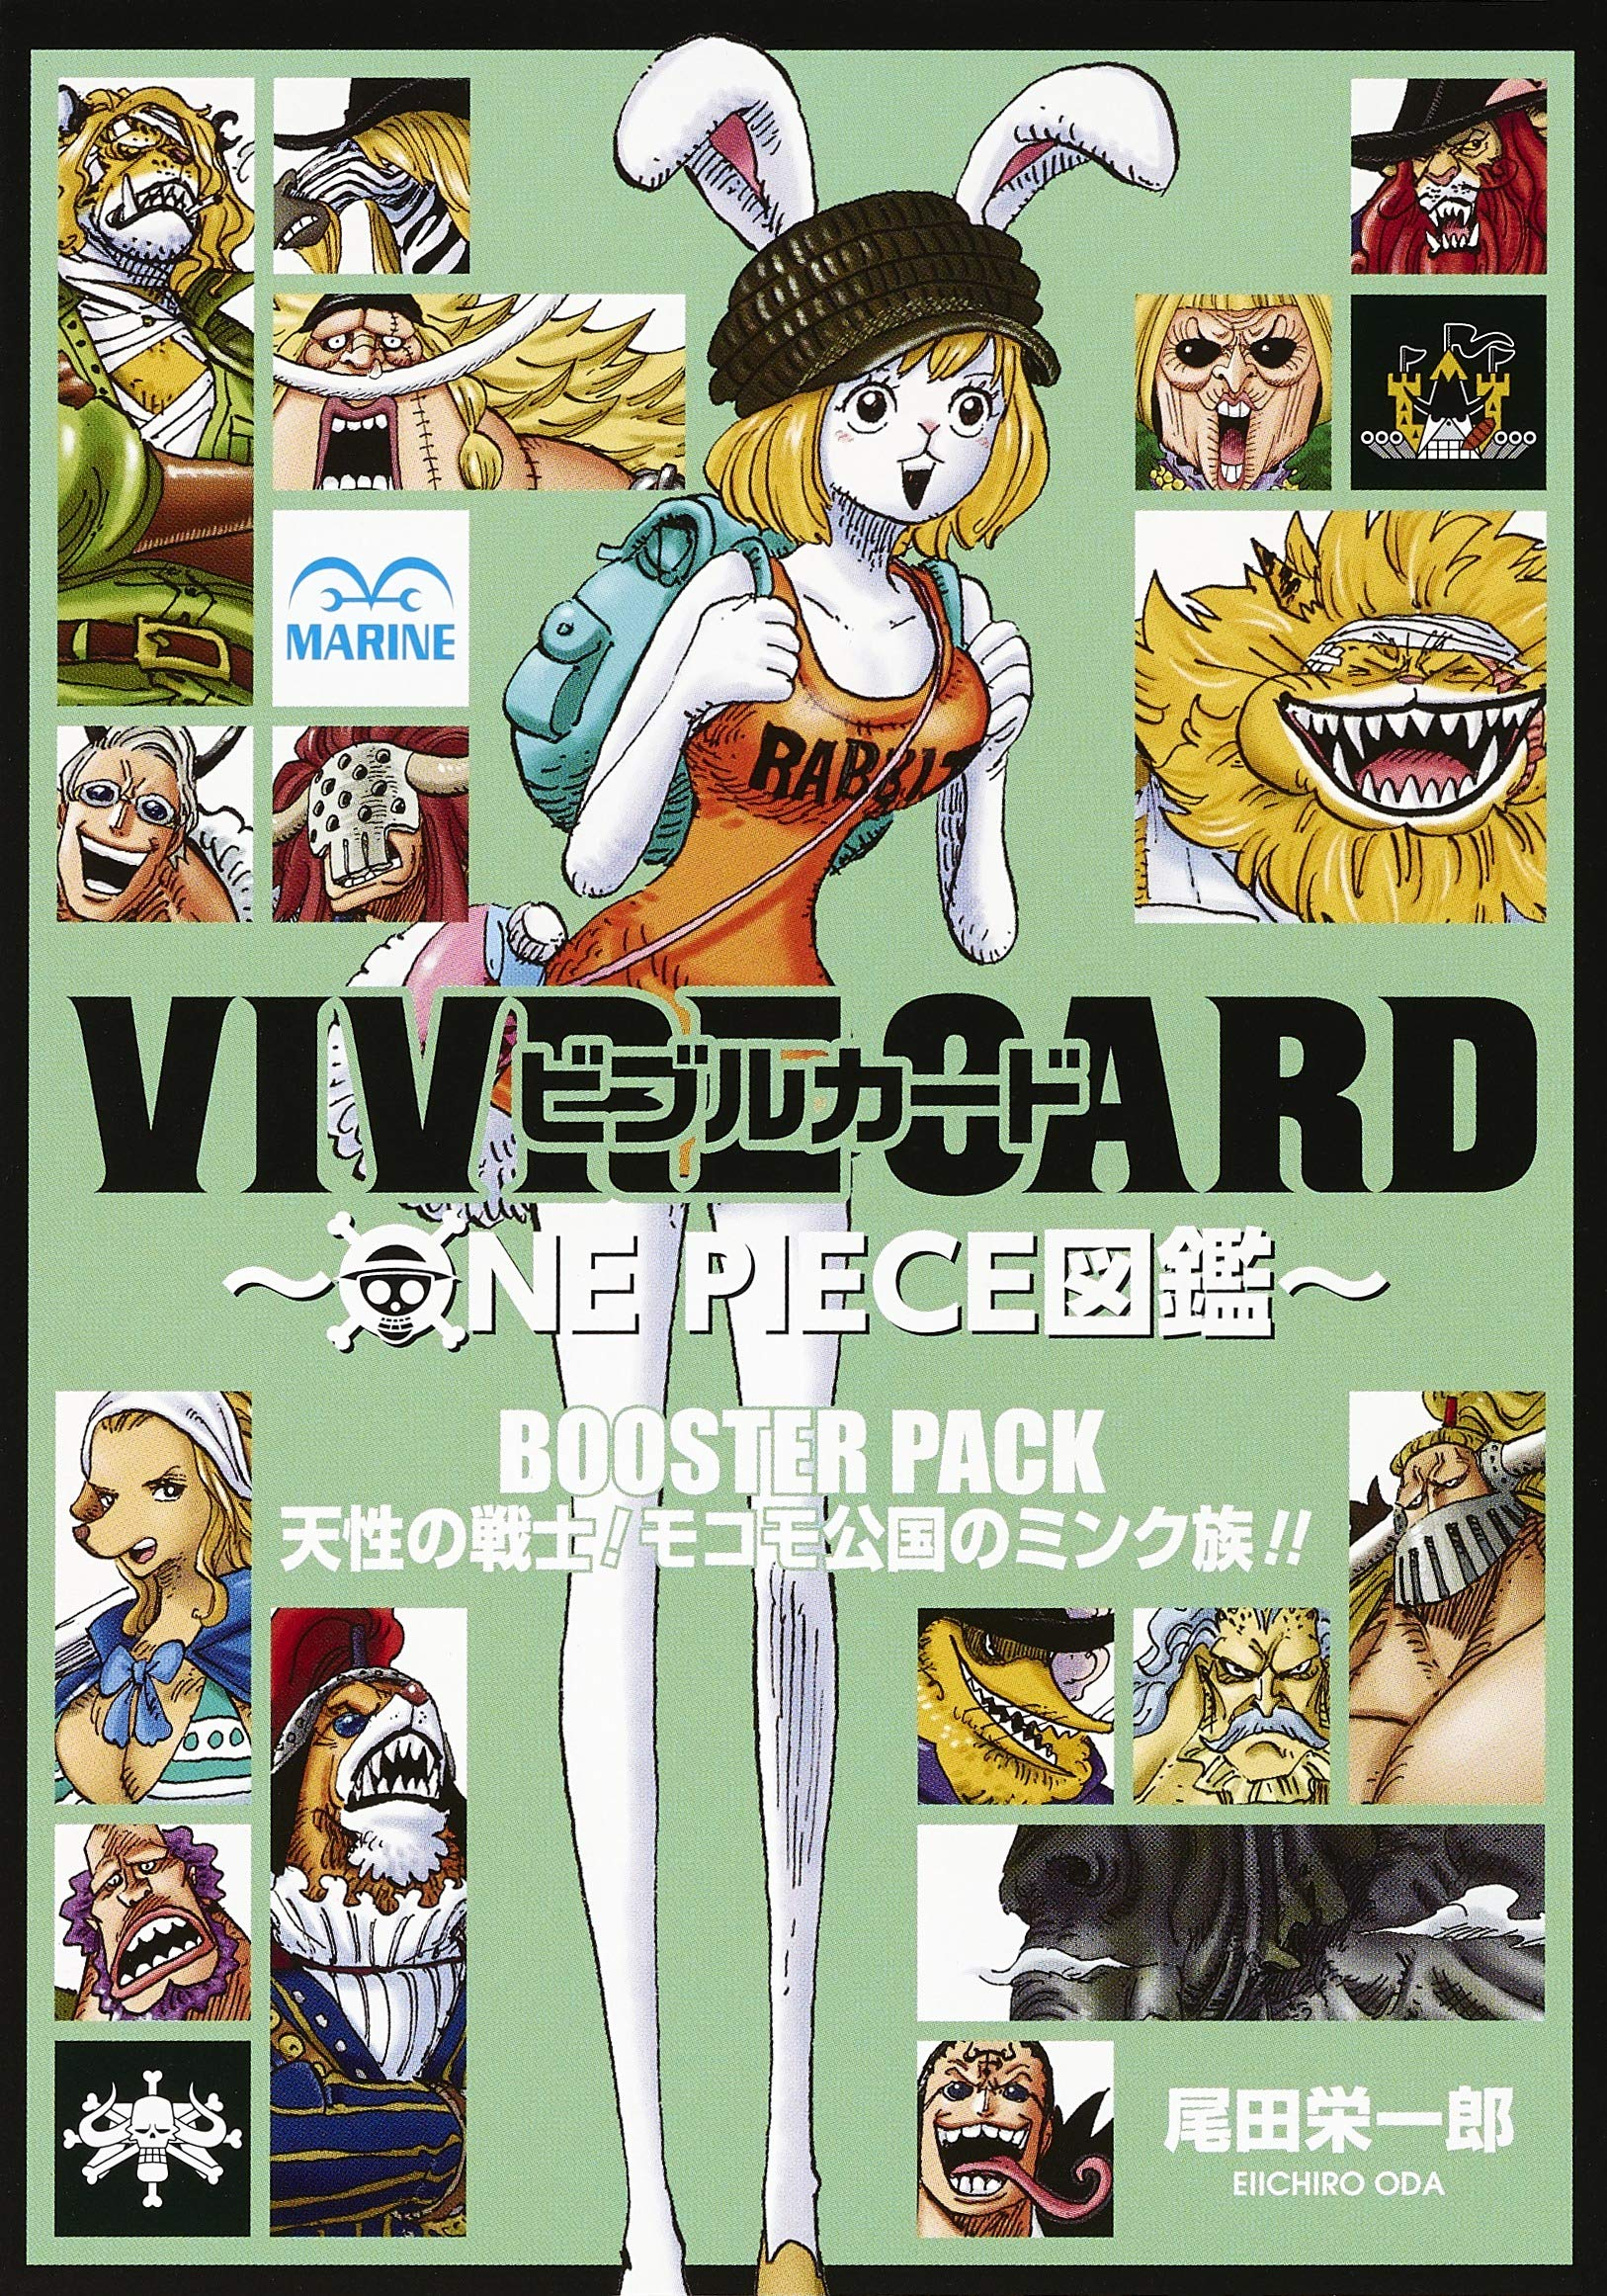 Vivre Card, One Piece Wiki